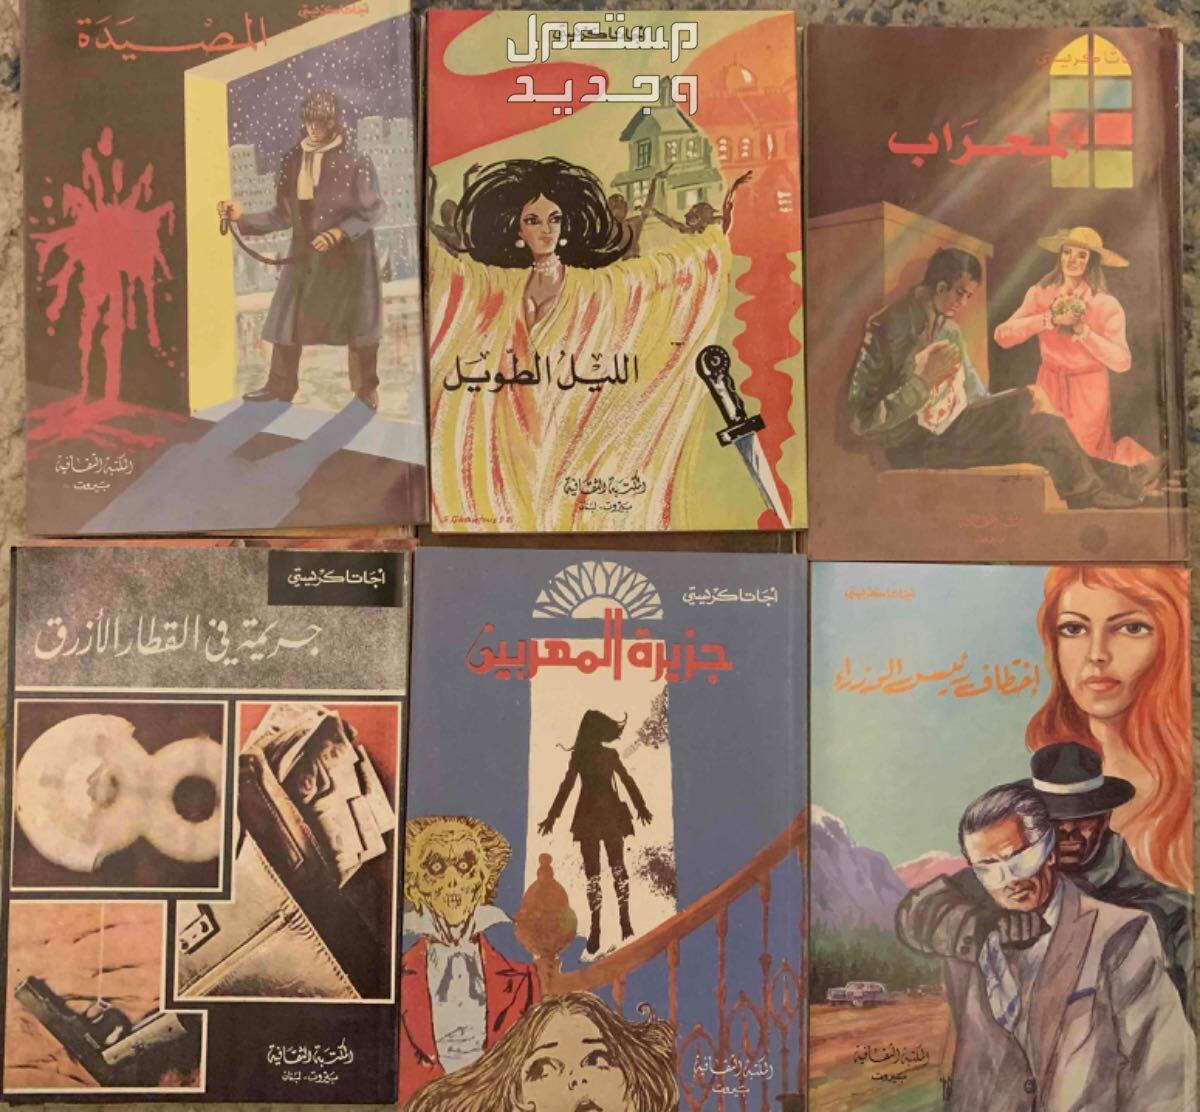 روايات اجاثا كريستي طبعات قديمه في الرياض بسعر 15 ريال سعودي